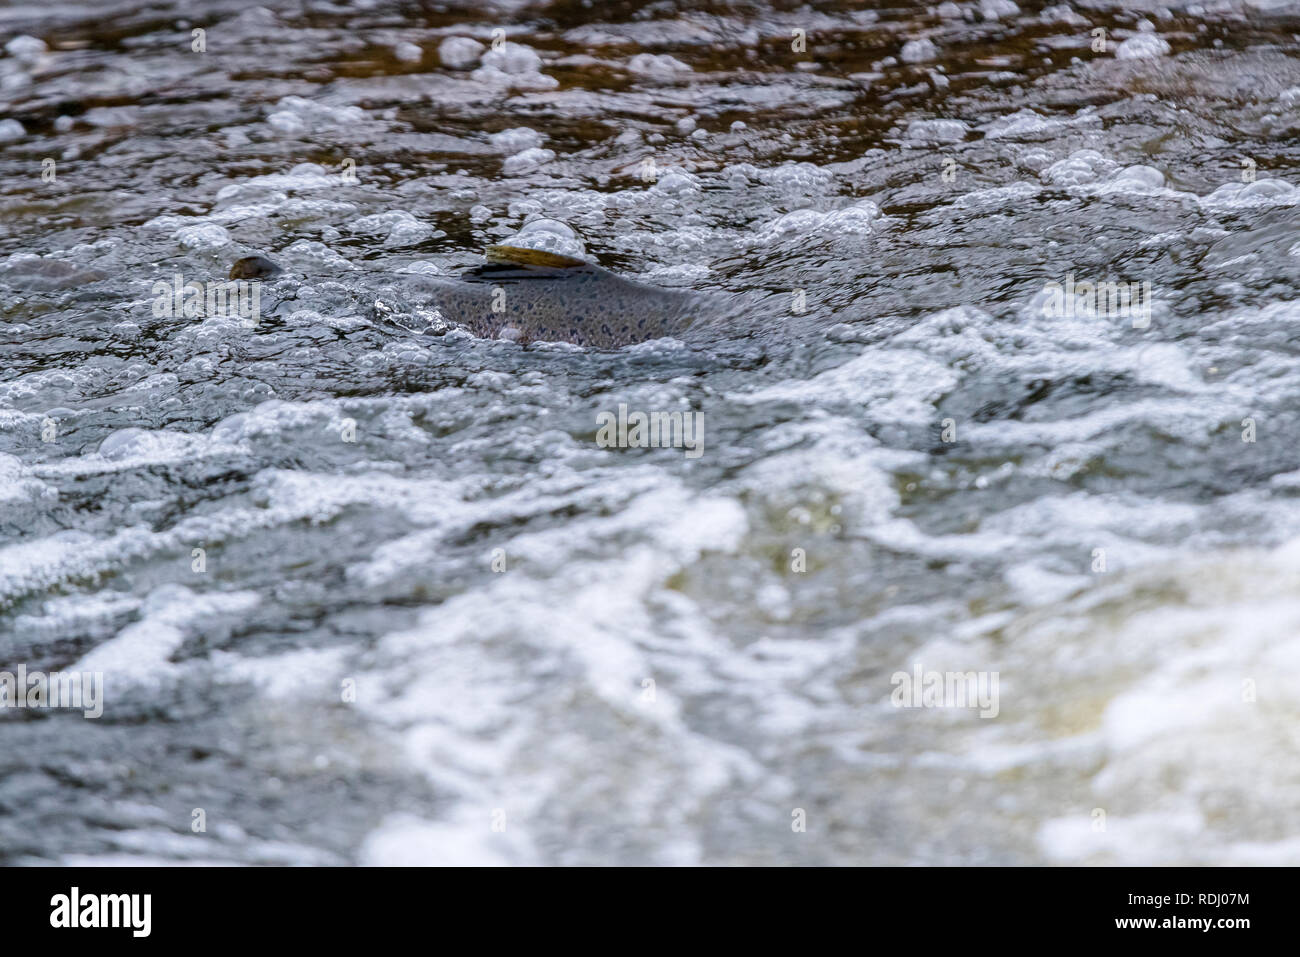 Atlantische Lachse springen rapids Brutplatz zu finden. Fische schwimmen im Fluss aufwärts zu züchten. Stockfoto